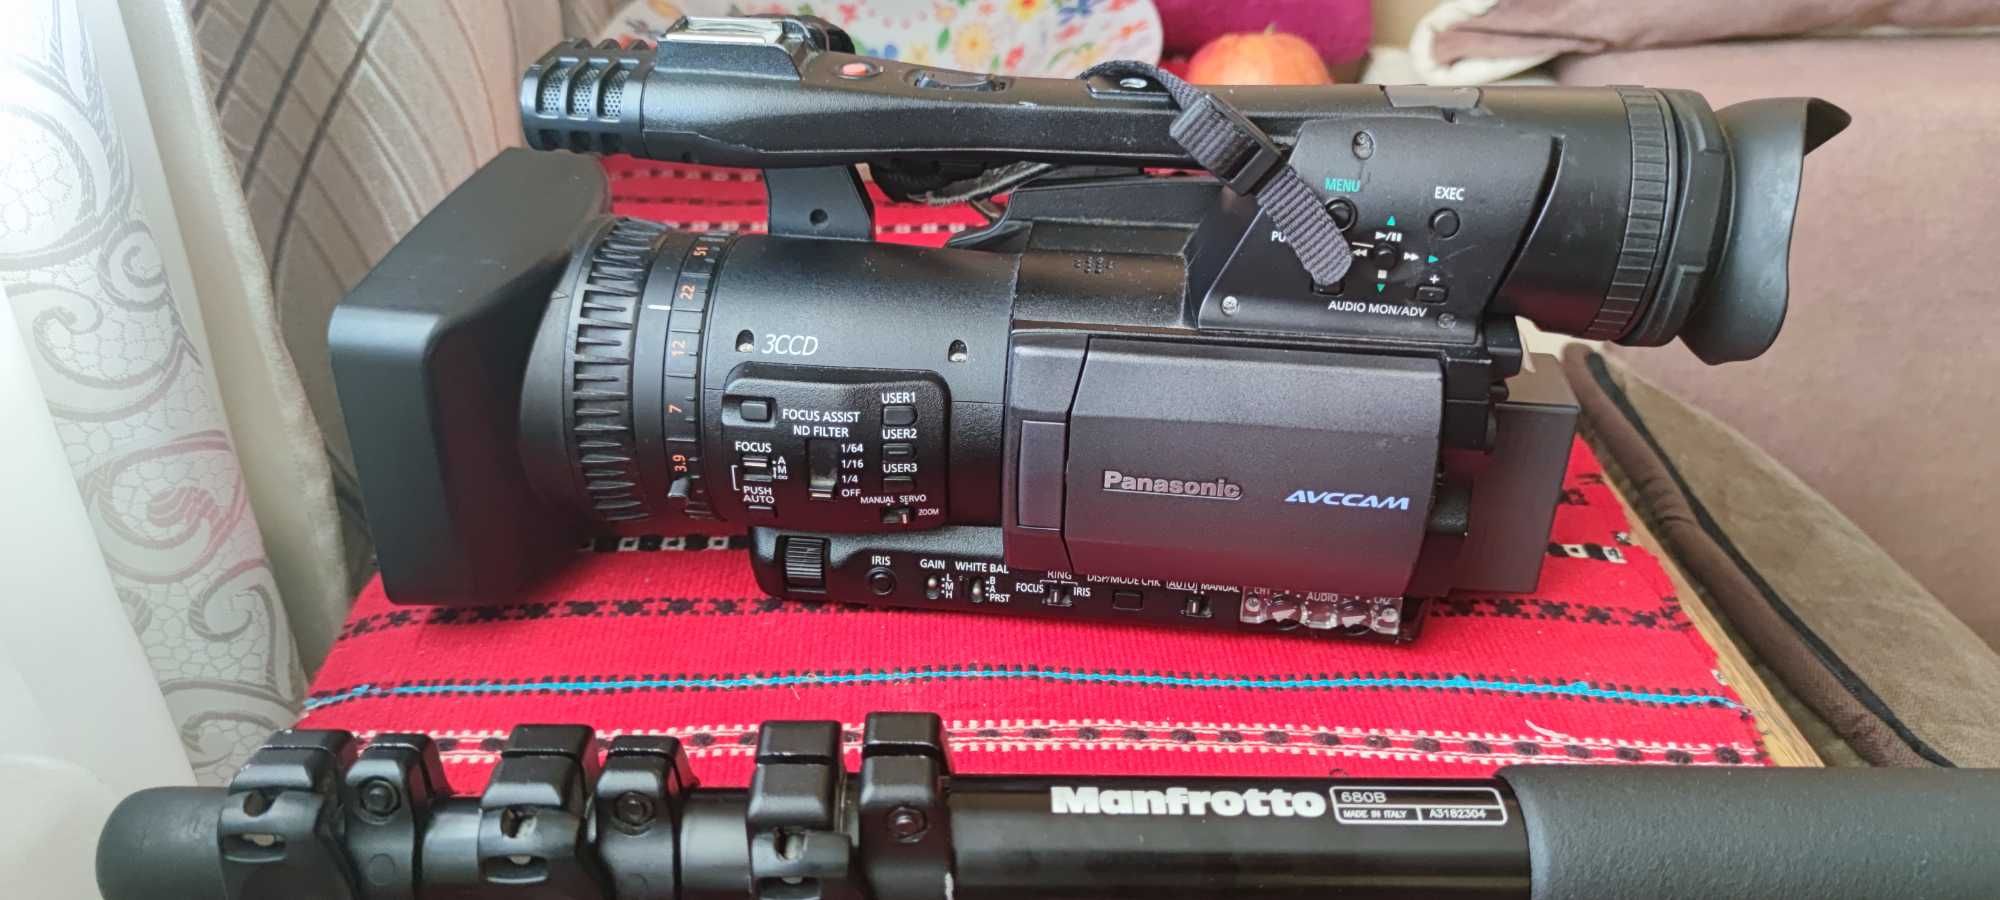 Vând Camera Video Panasonic HMC151E,toate accesoriile, pachet complet